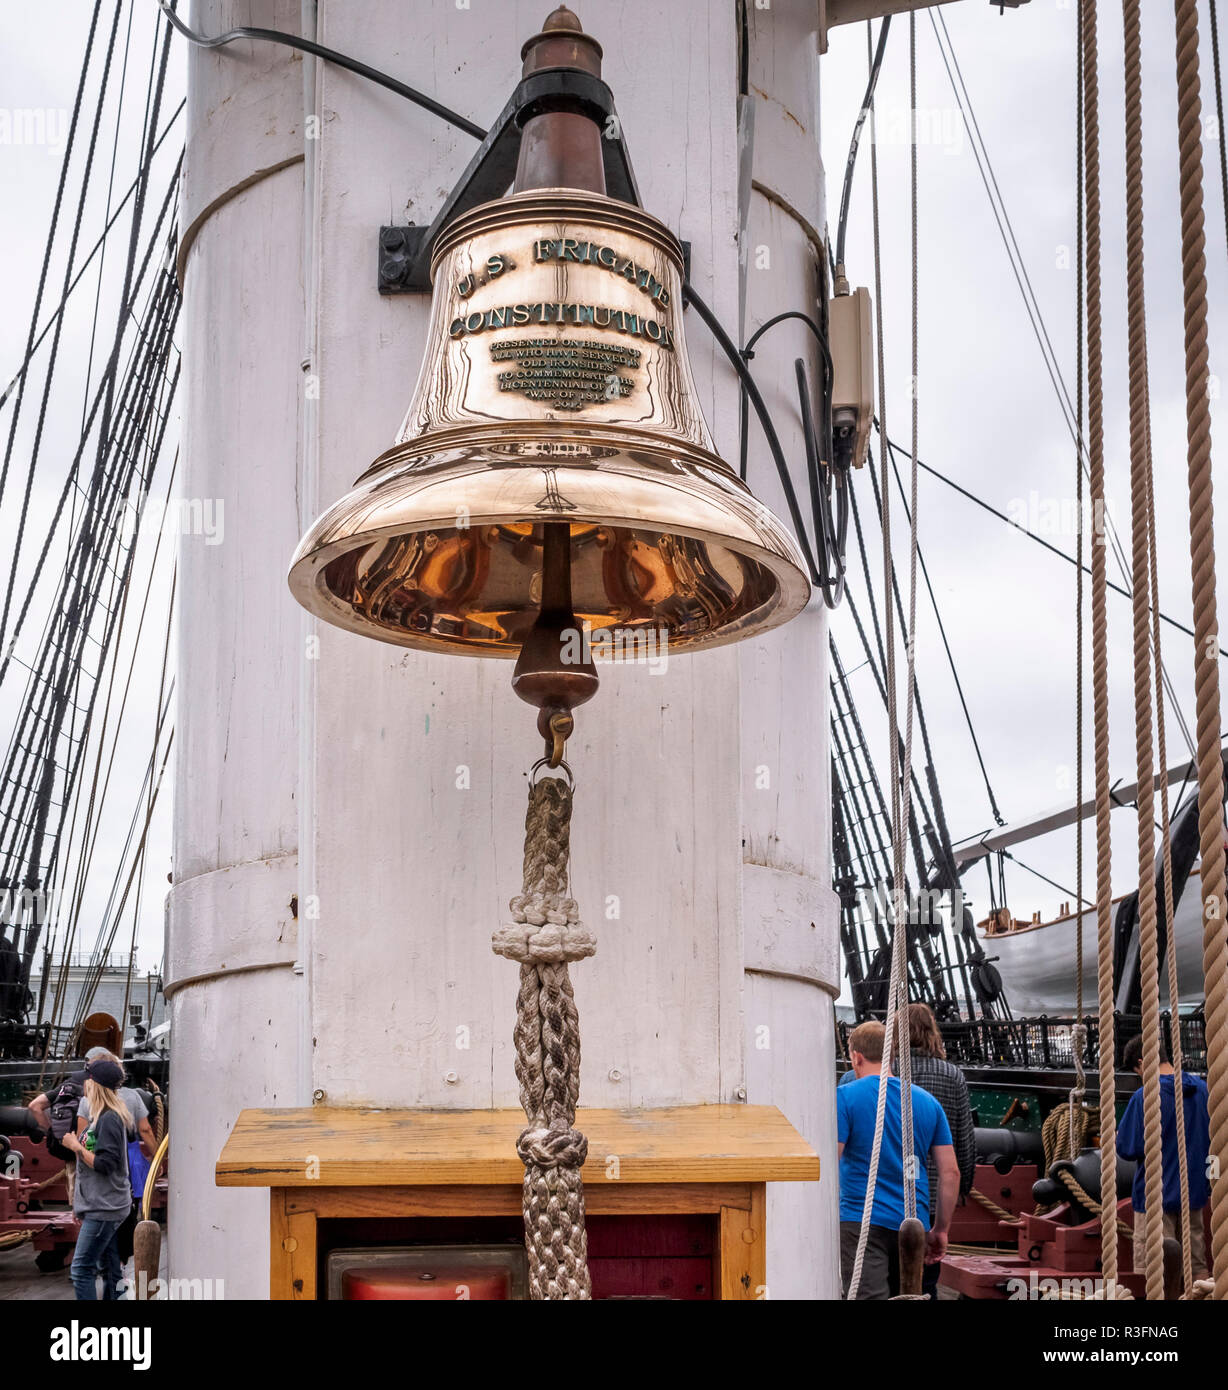 Una campana histórica del buque de guerra más antiguo del mundo todavía a flote - USS Consituttion, es decir, la fragata norteamericana constitución en Boston, EE.UU. Foto de stock